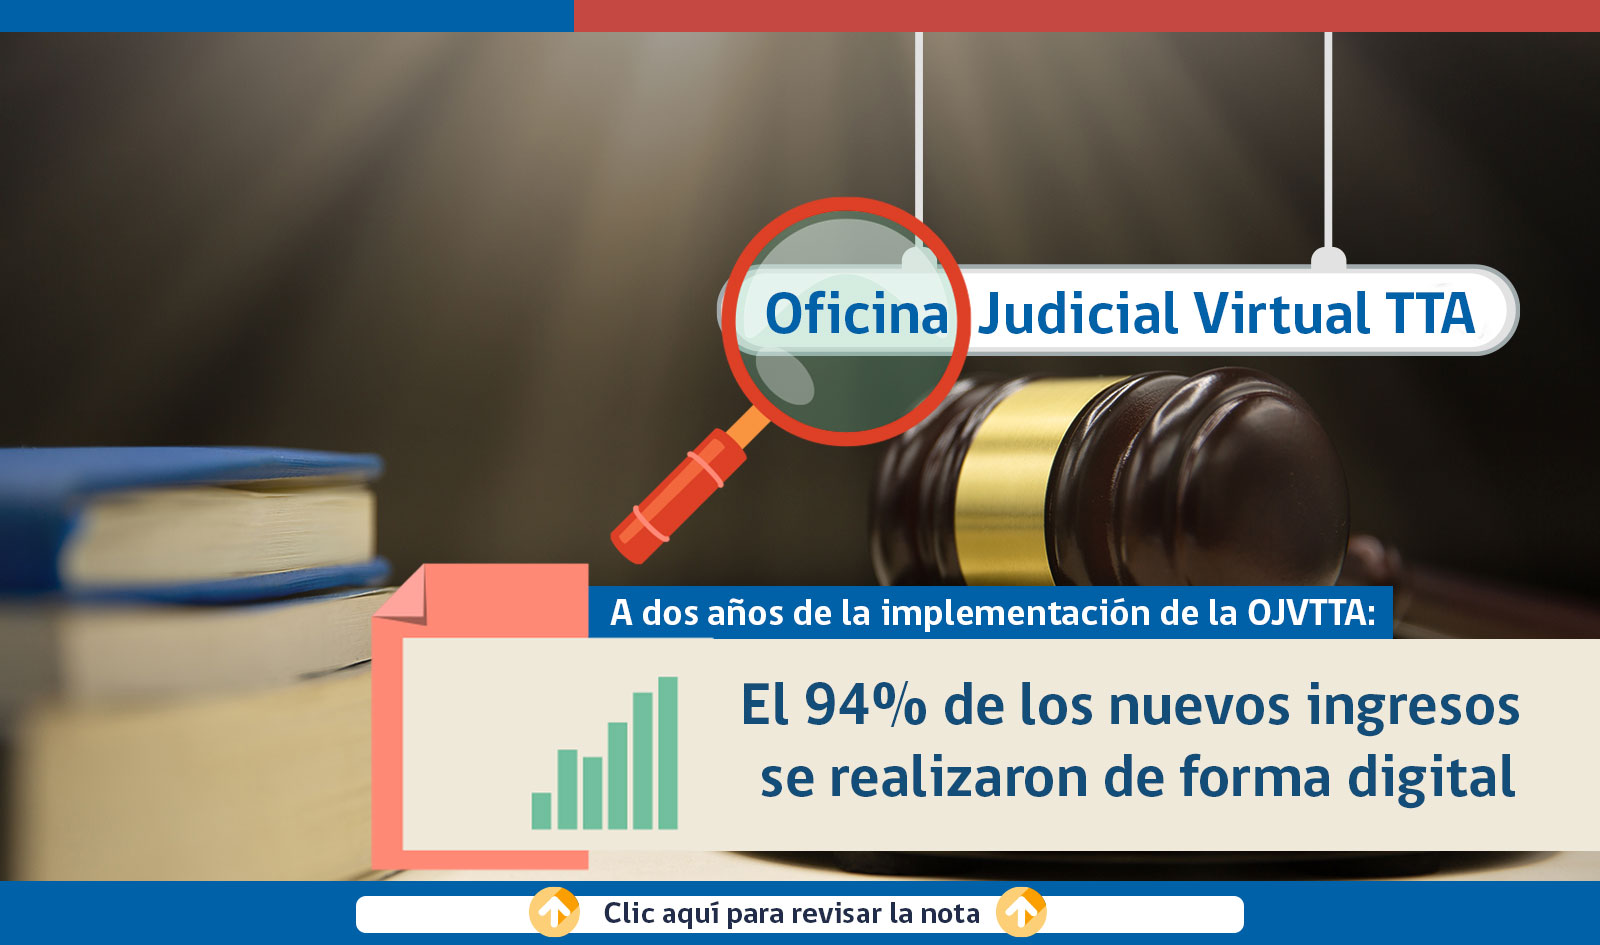 A dos años de la implementación de la Oficina Judicial Virtual de los TTA (OJVTTA): El 94% de los nuevos ingresos se realizaron de forma digital